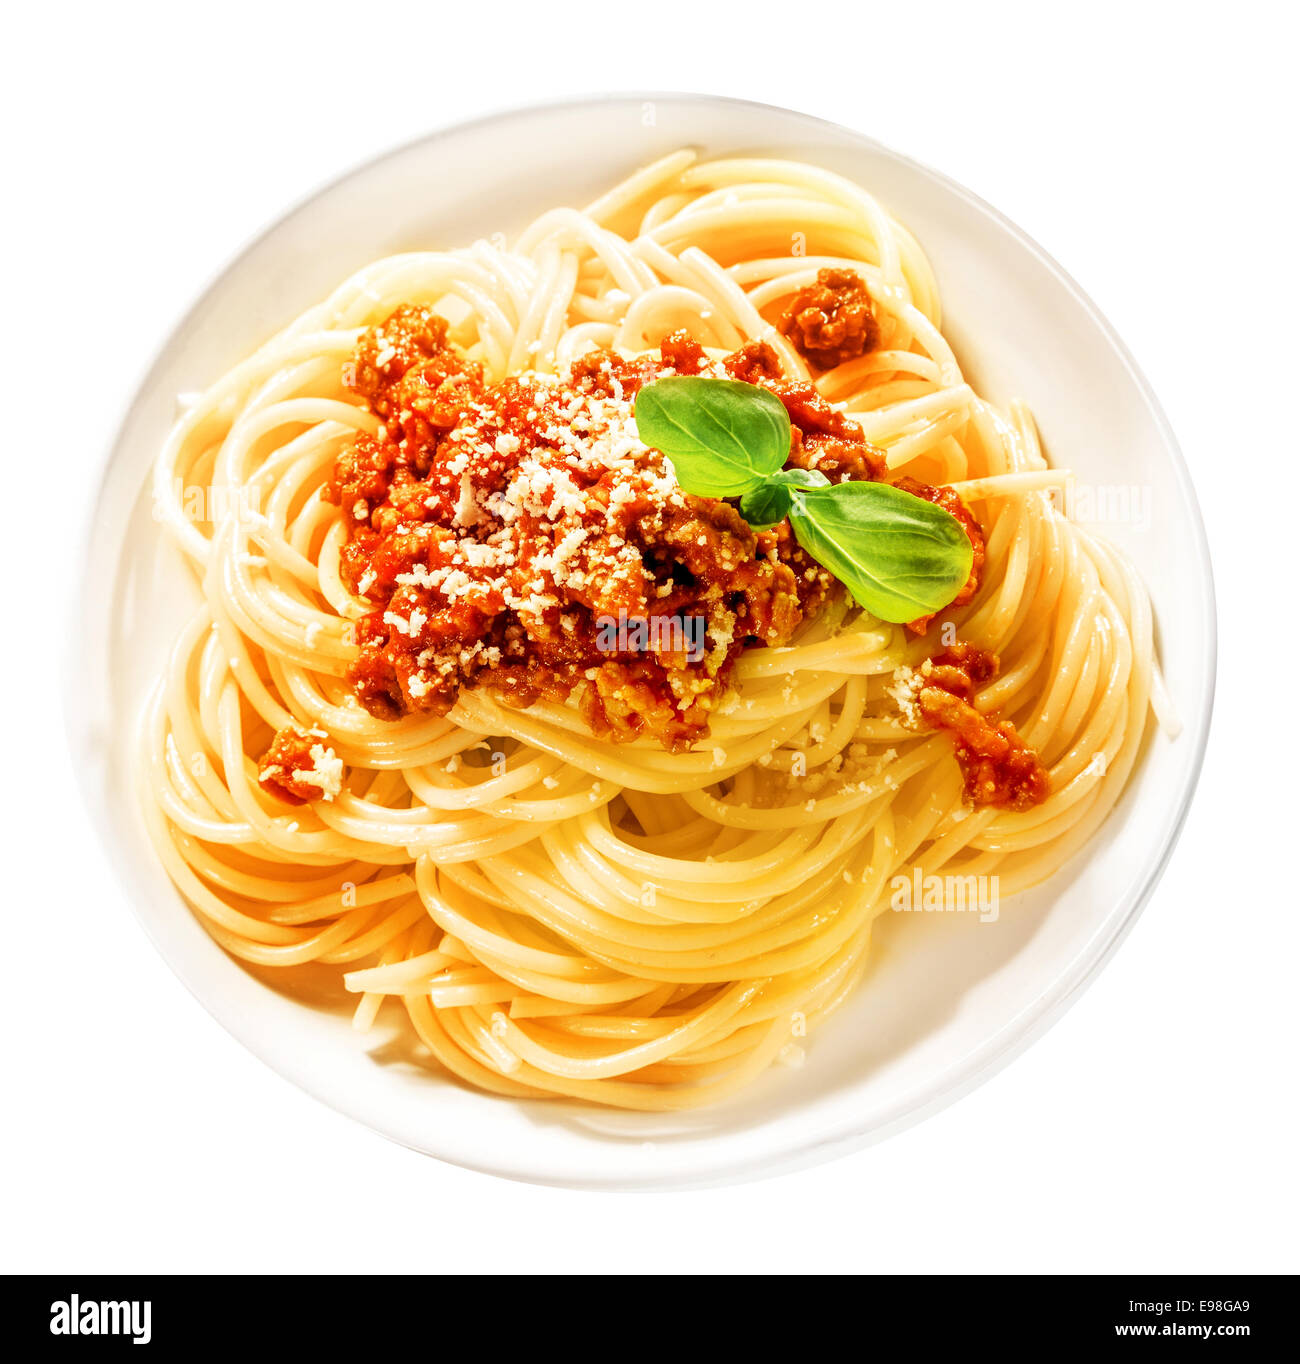 Italiano sabroso espagueti con carne molida de res aderezado con queso parmesano y albahaca fresca se amontona en una placa blanca, vista superior Foto de stock